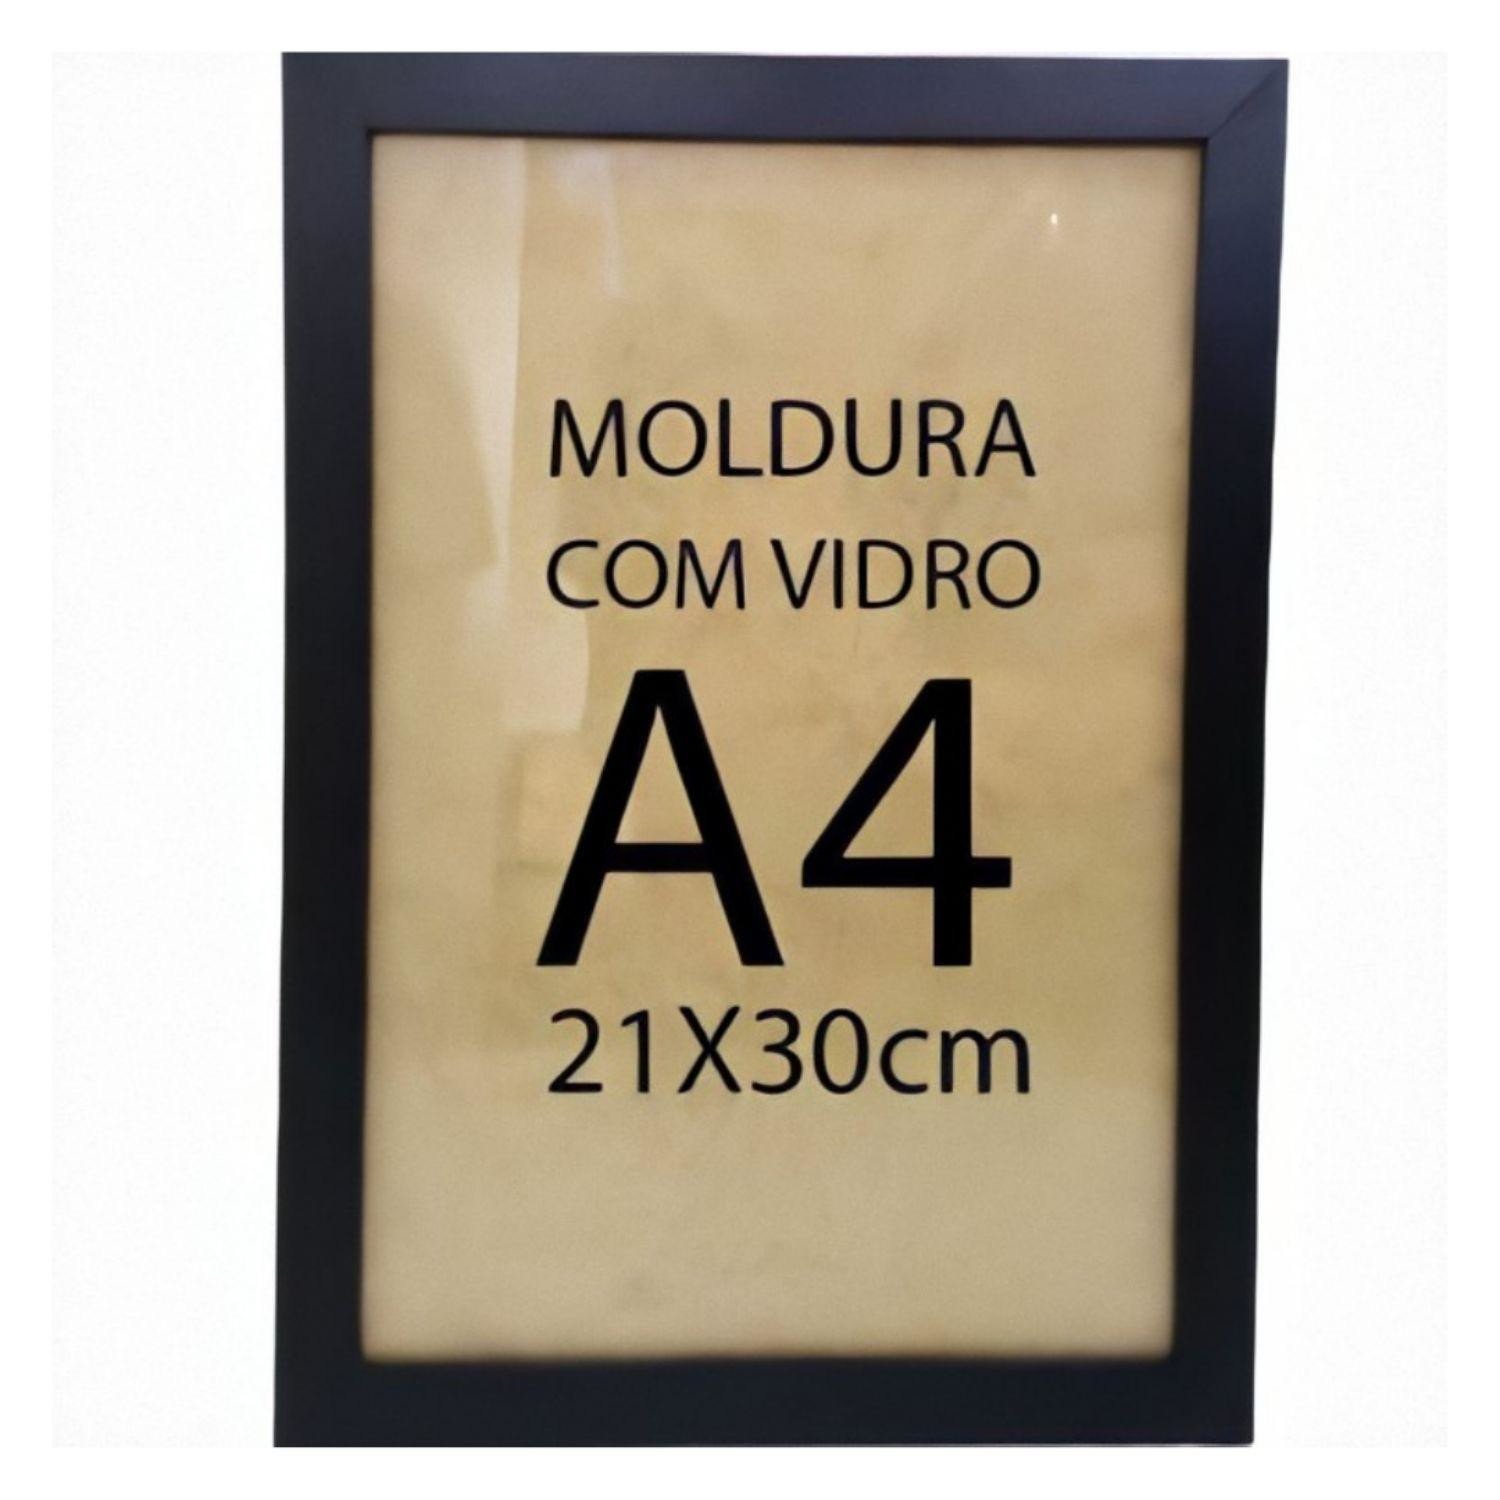 Moldura Quadro A4 21x30cm Diploma Certificado Foto com Vidro Empório do Adesivo Moldura Preta 02 Uni - 1